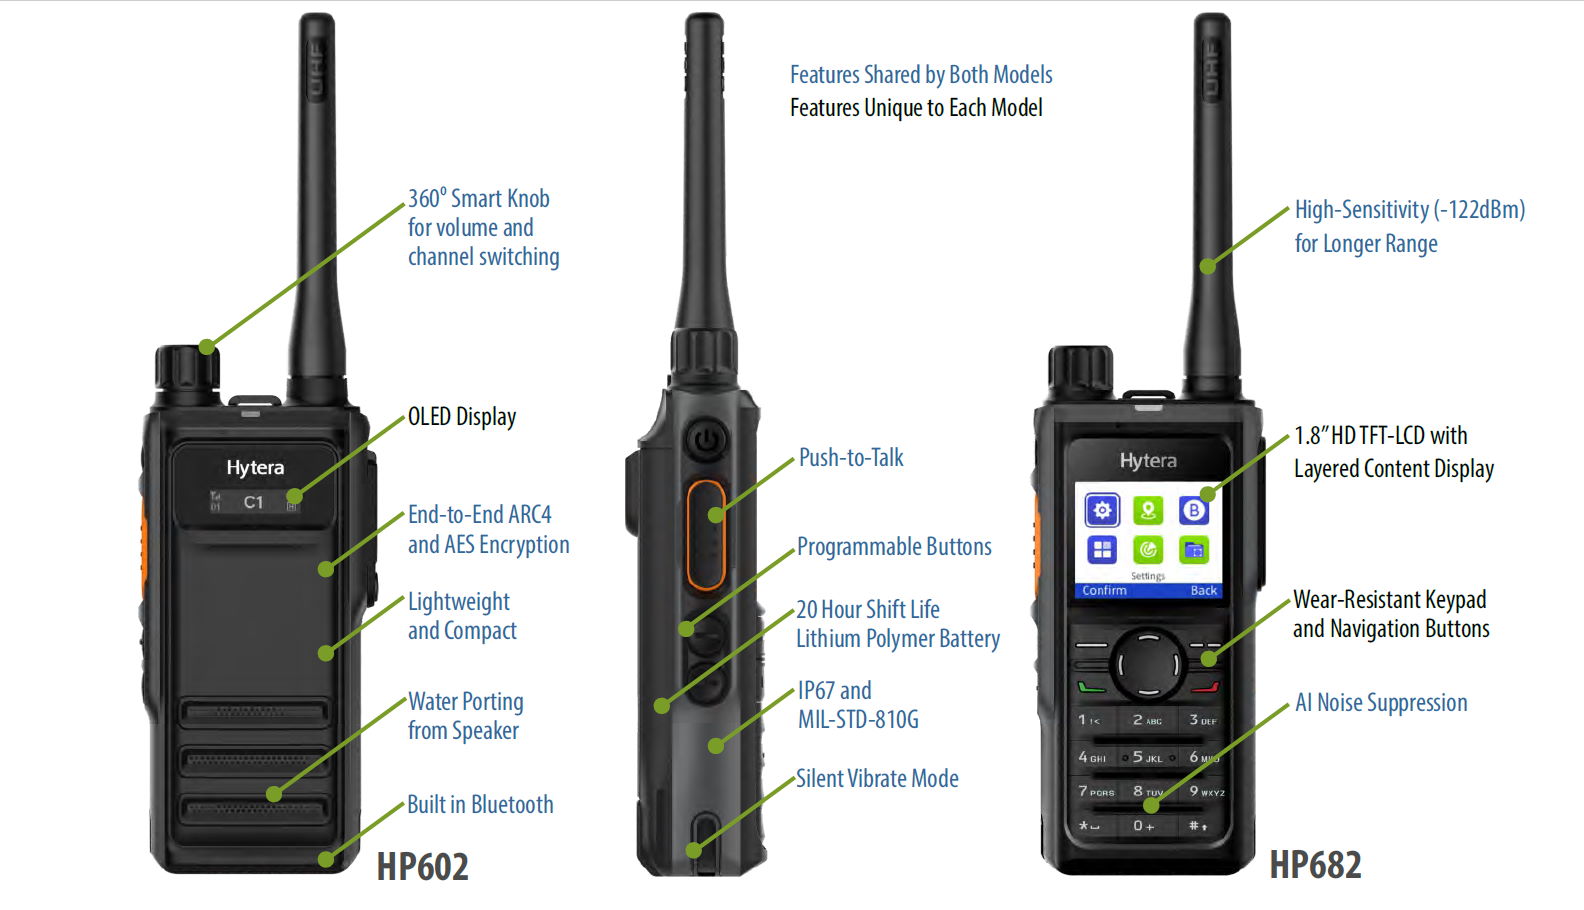 HP6 Series Digital Radios